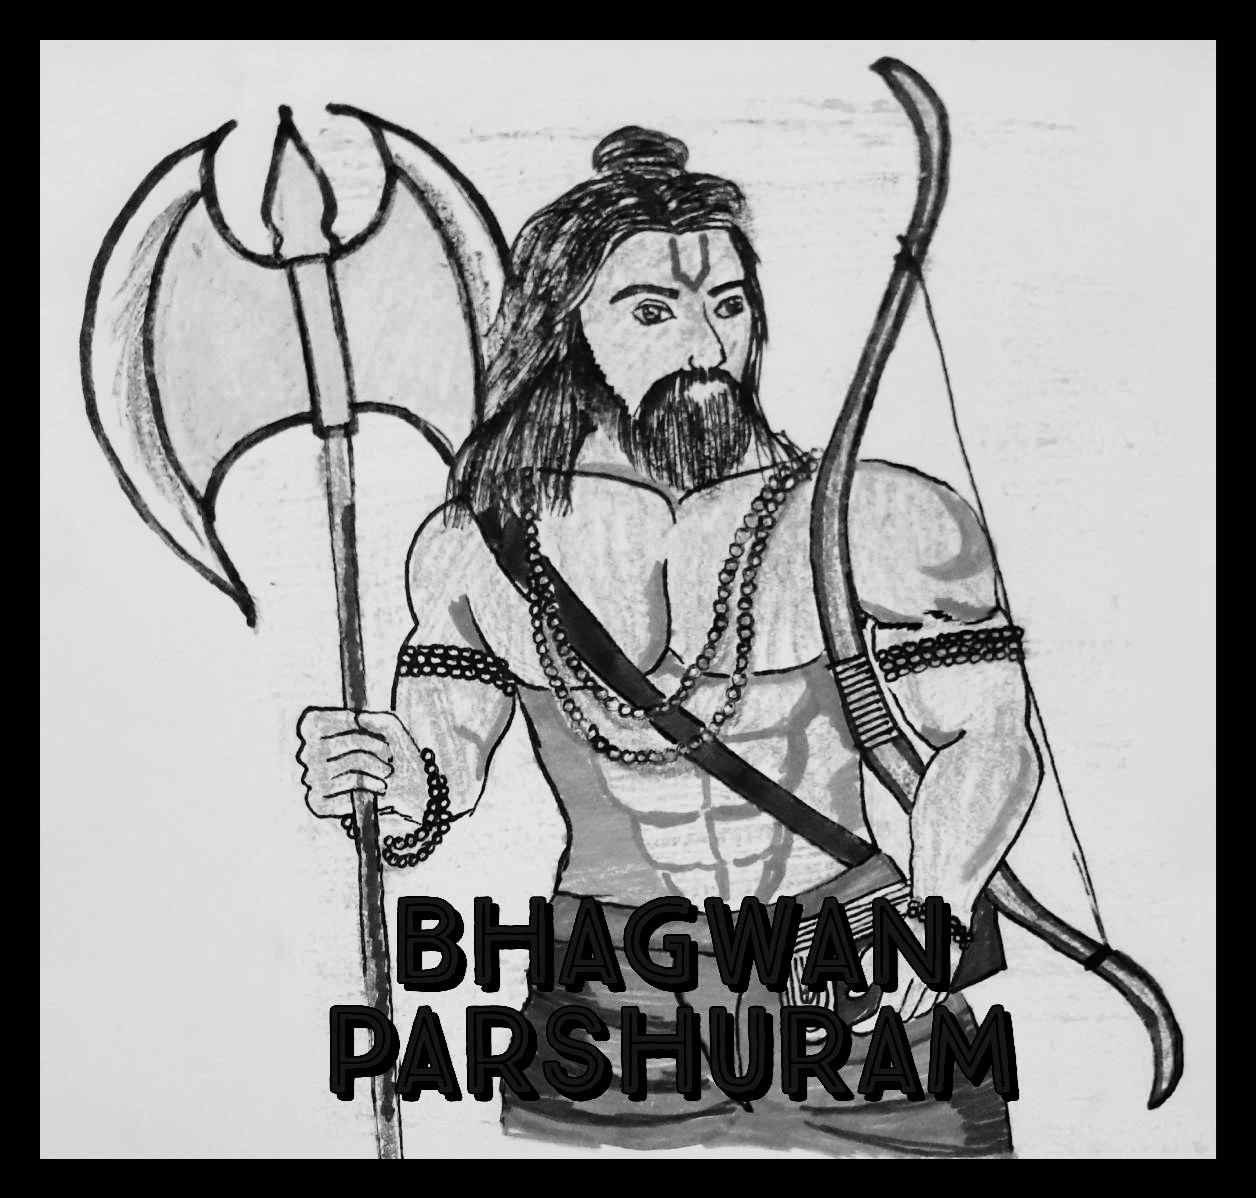 Sketch of Lord Parshuram